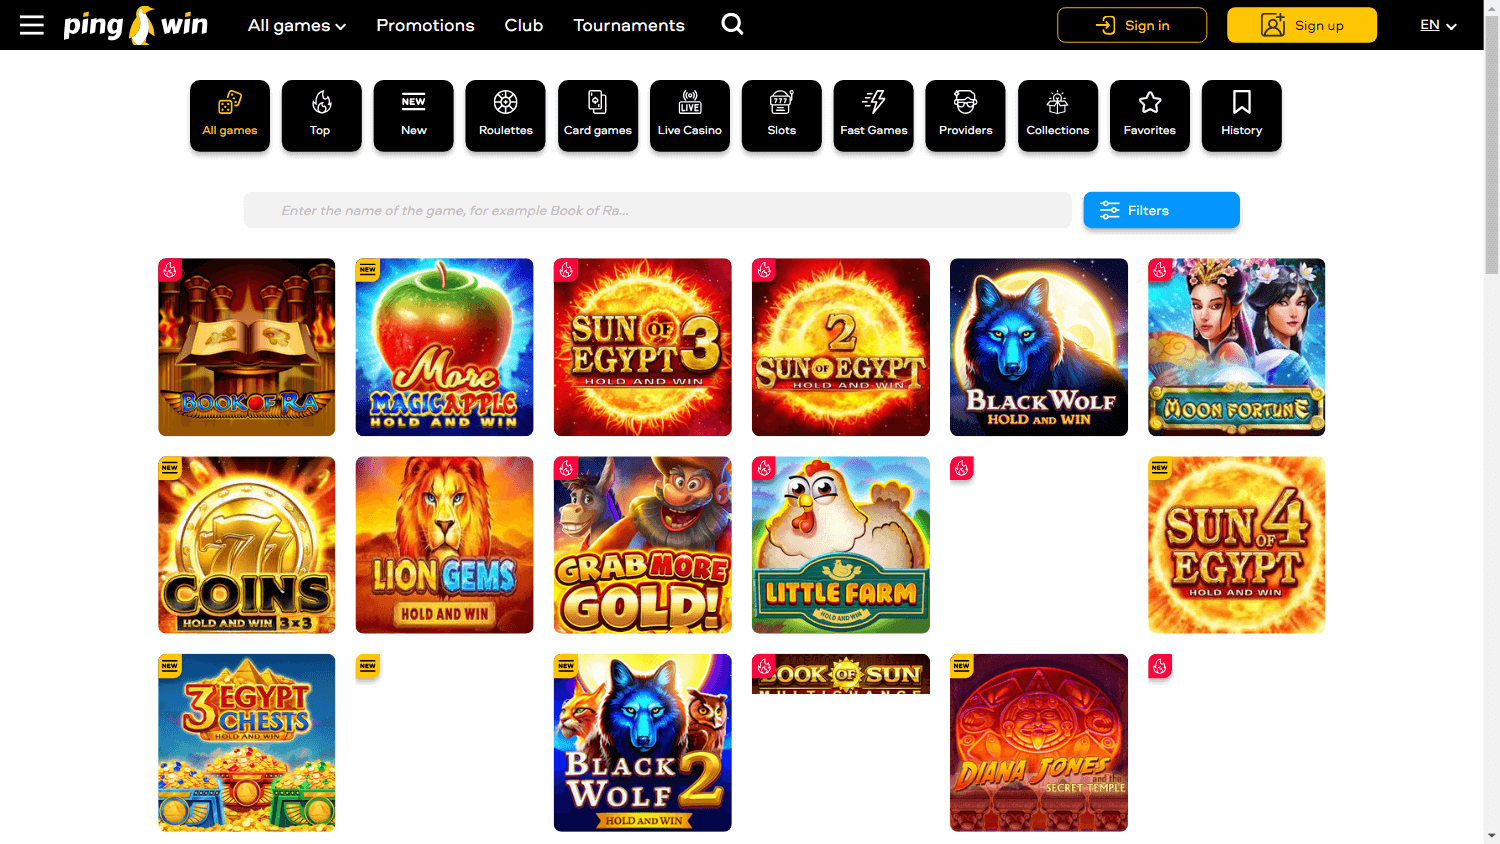 pingwin_casino_game_gallery_desktop